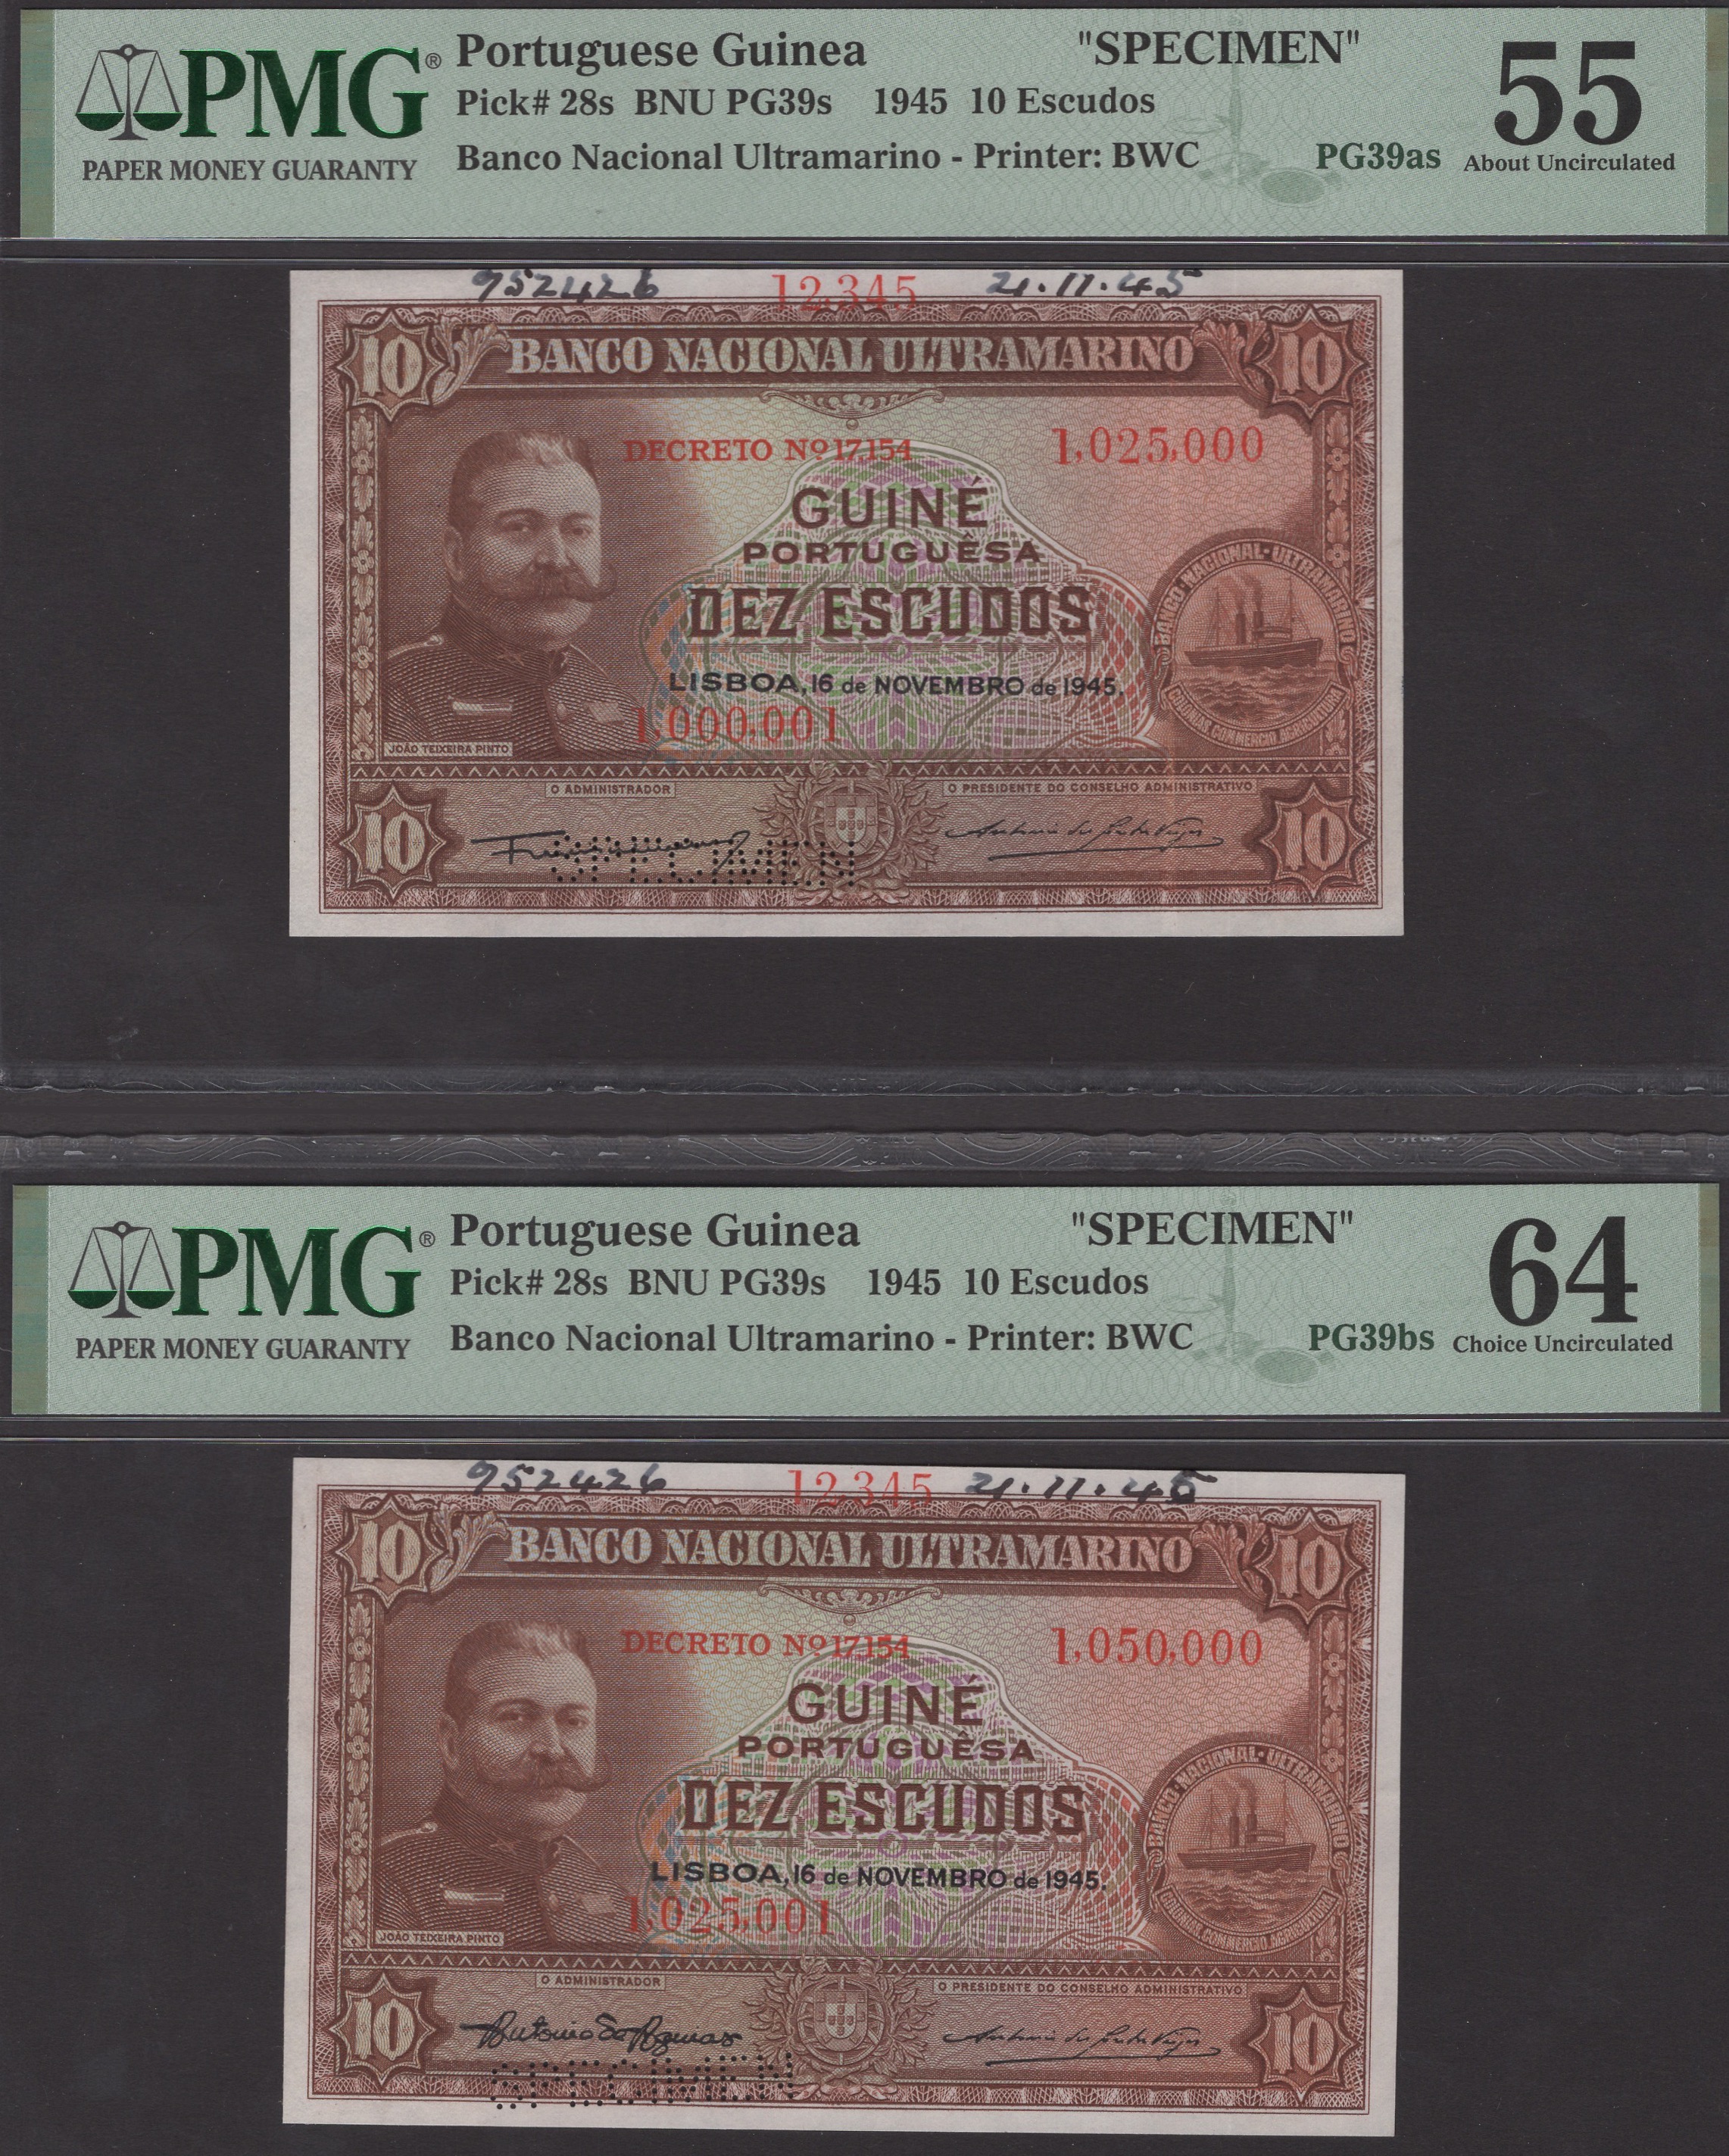 Banco Nacional Ultramarino, Portuguese Guinea, printers archival specimens for 10 Escudos...